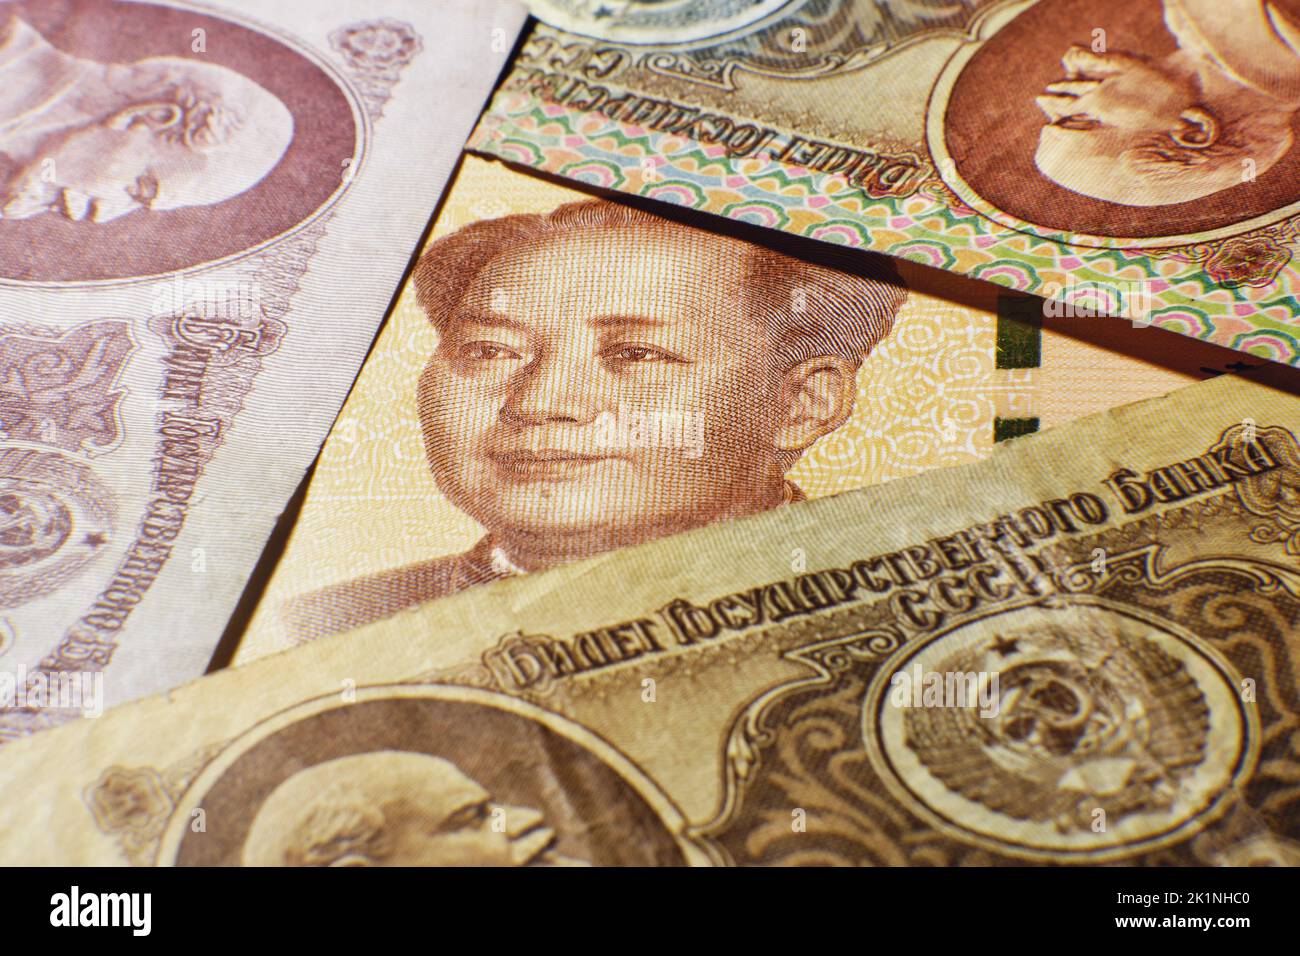 Chinesisches Yuan-Geld und Rubel der UdSSR, Porträt von Lenin und Mao Zedong aus der Nähe. Russland Geldmünze und Yuan Rechnung aus China Stockfoto